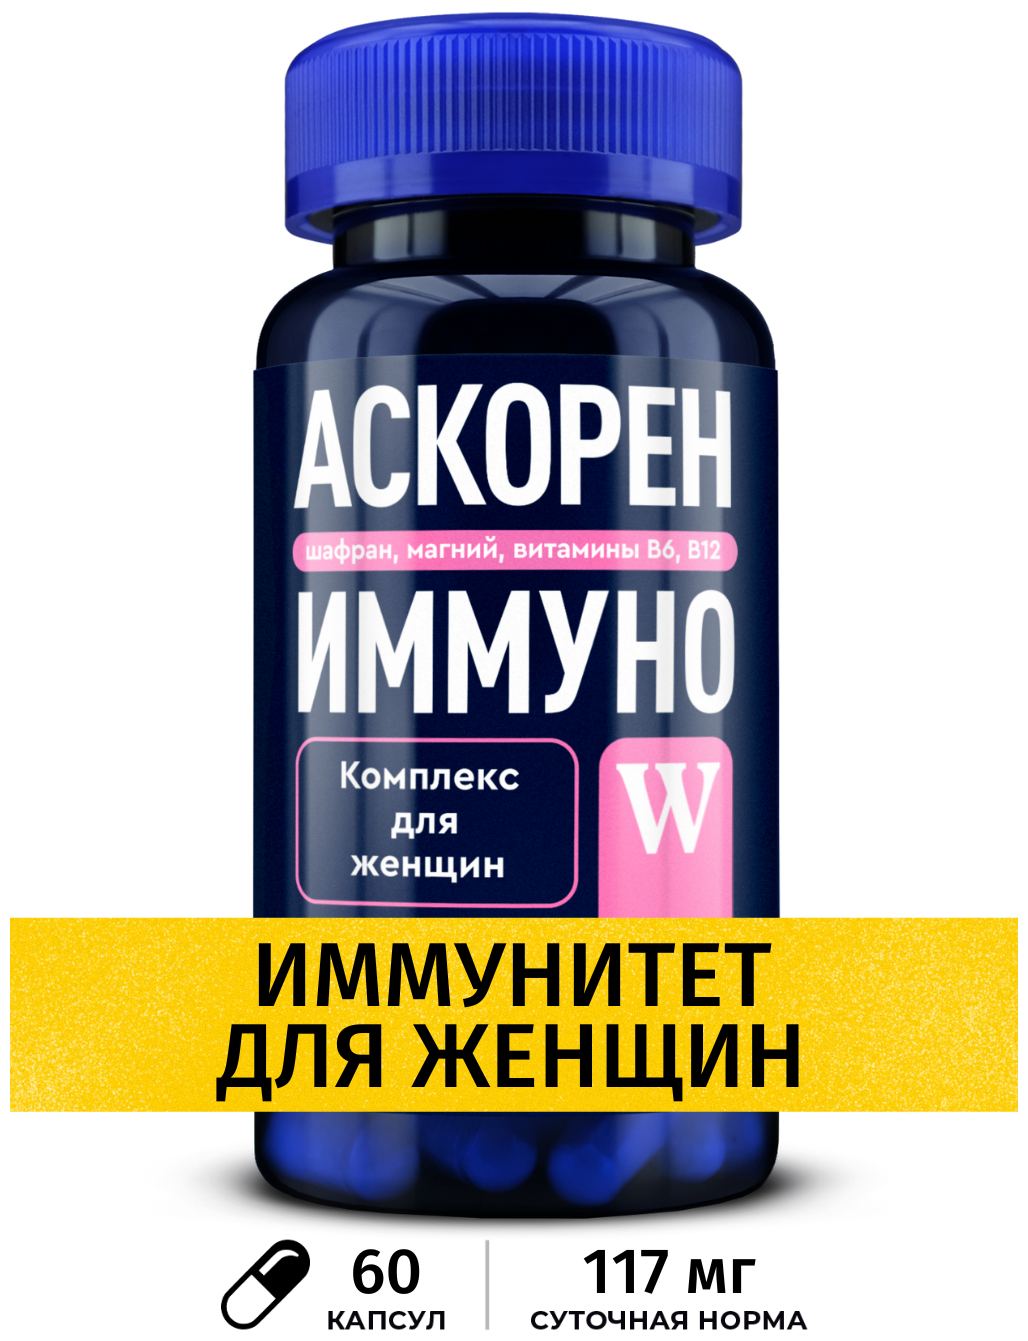 Витамины для женщин Аскорен Иммуно W комплекс для иммунитета c магнием шафраном и витамины В6 и В12 60 капсул GLS Pharmaceuticals